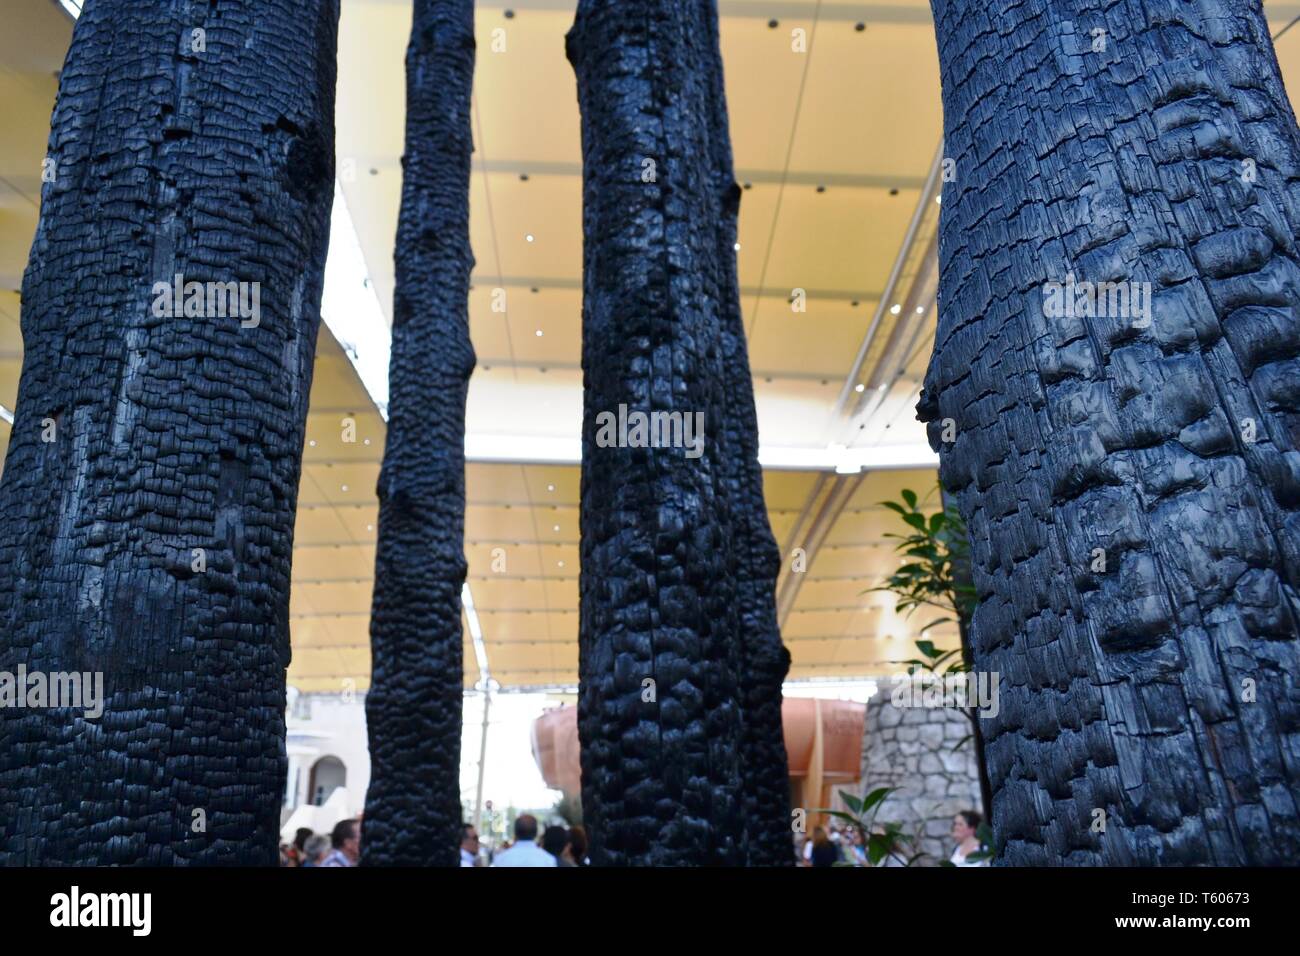 Milano/Italia - Ottobre 5, 2015: vista da vicino a un carbone bruciata tronchi di alberi esposti all'ingresso del Monaco padiglione presso l'Expo Milano 2015. Foto Stock